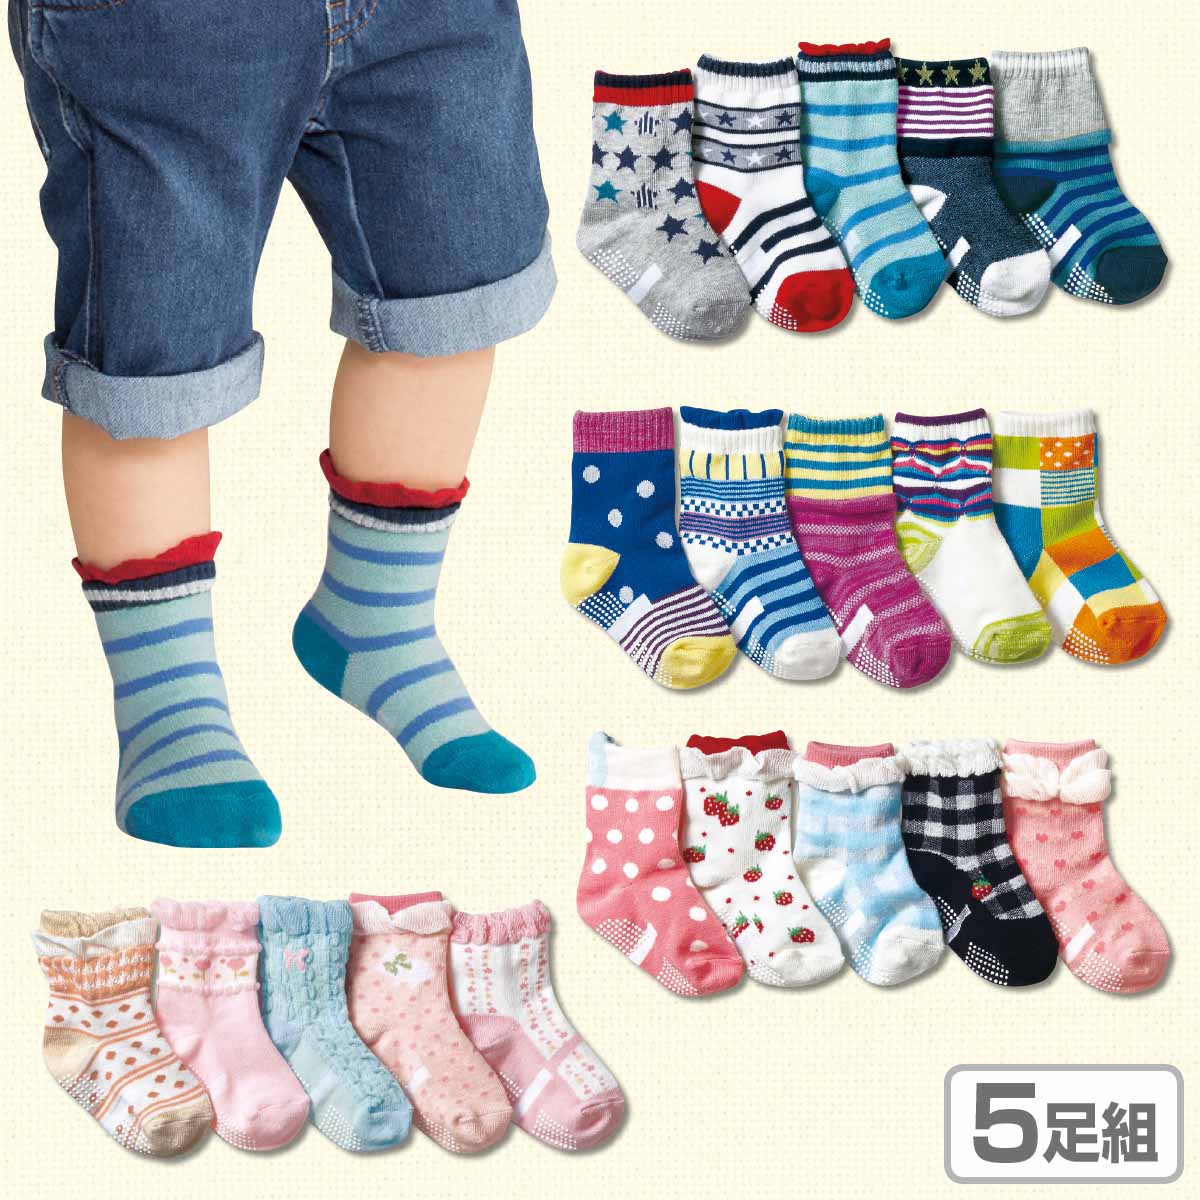 包邮 NISSEN春季新品 全棉宝宝袜子 婴儿防滑袜 可爱卡通儿童袜